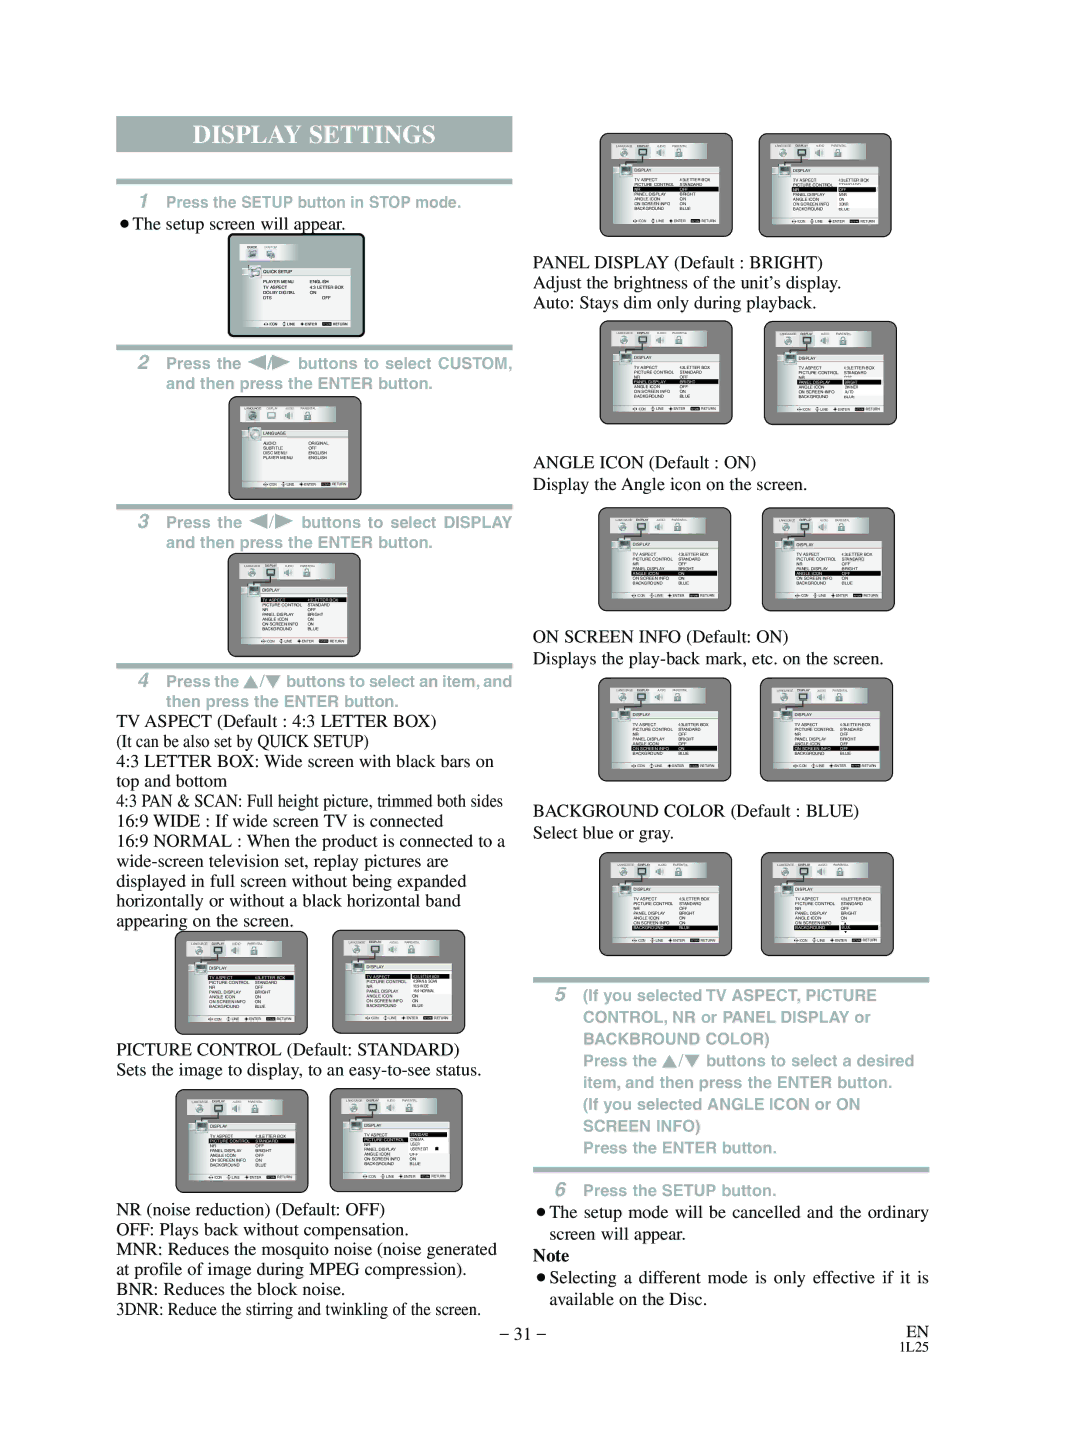 Mitsubishi Electronics DD-8040 manual Display Settings, Angle Icon Default on Display the Angle icon on the screen 